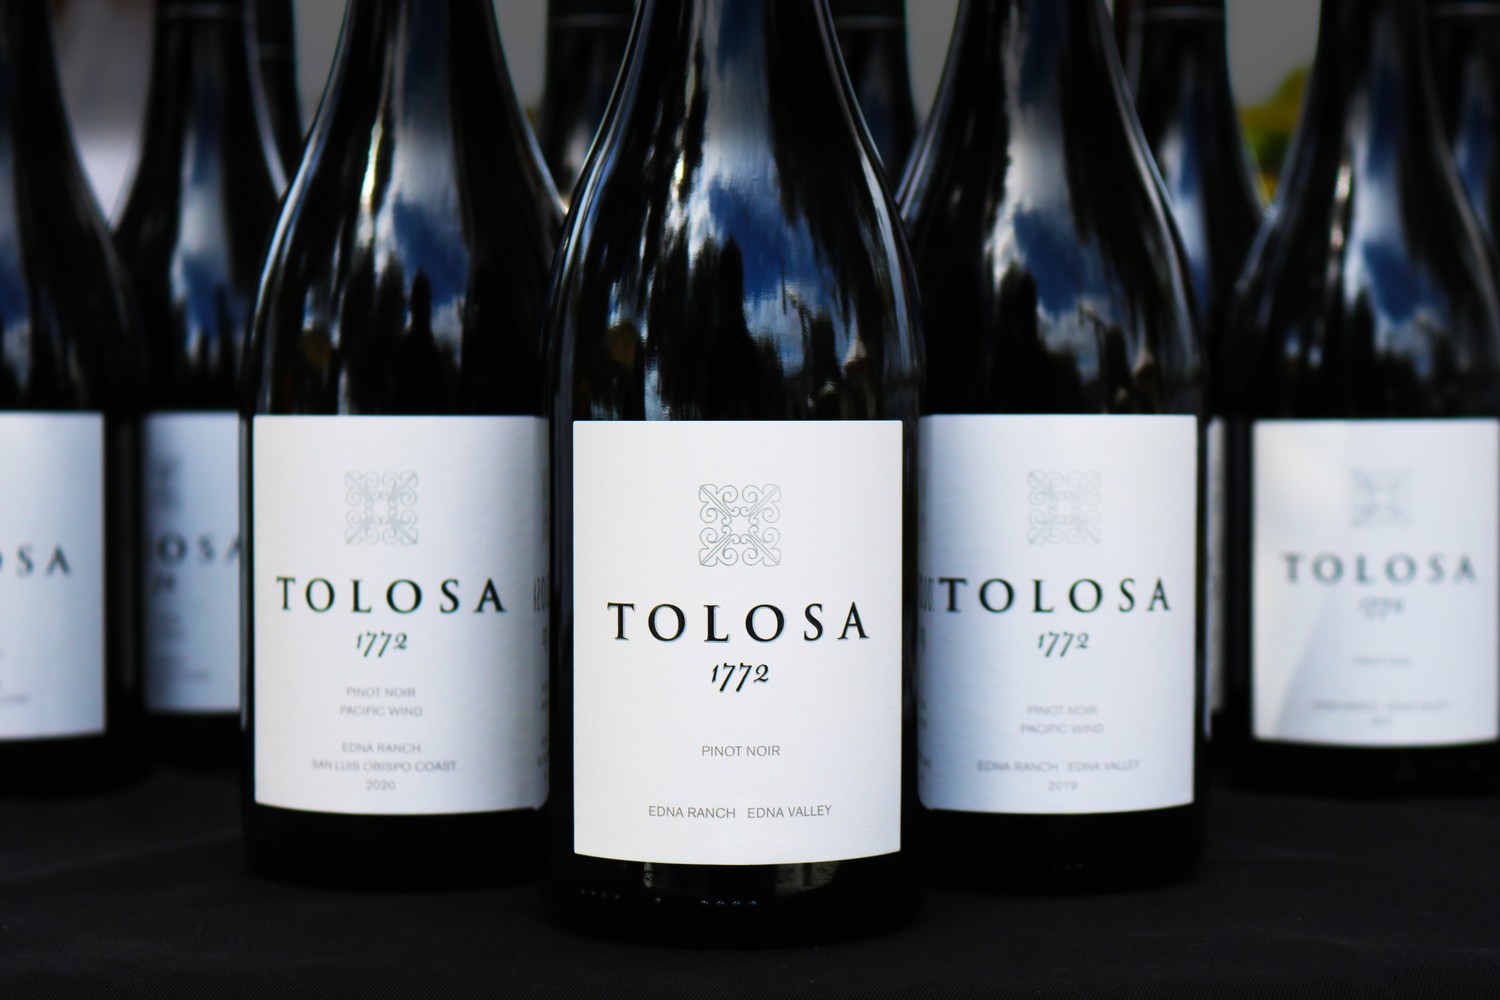 Image of Tolosa wine bottles